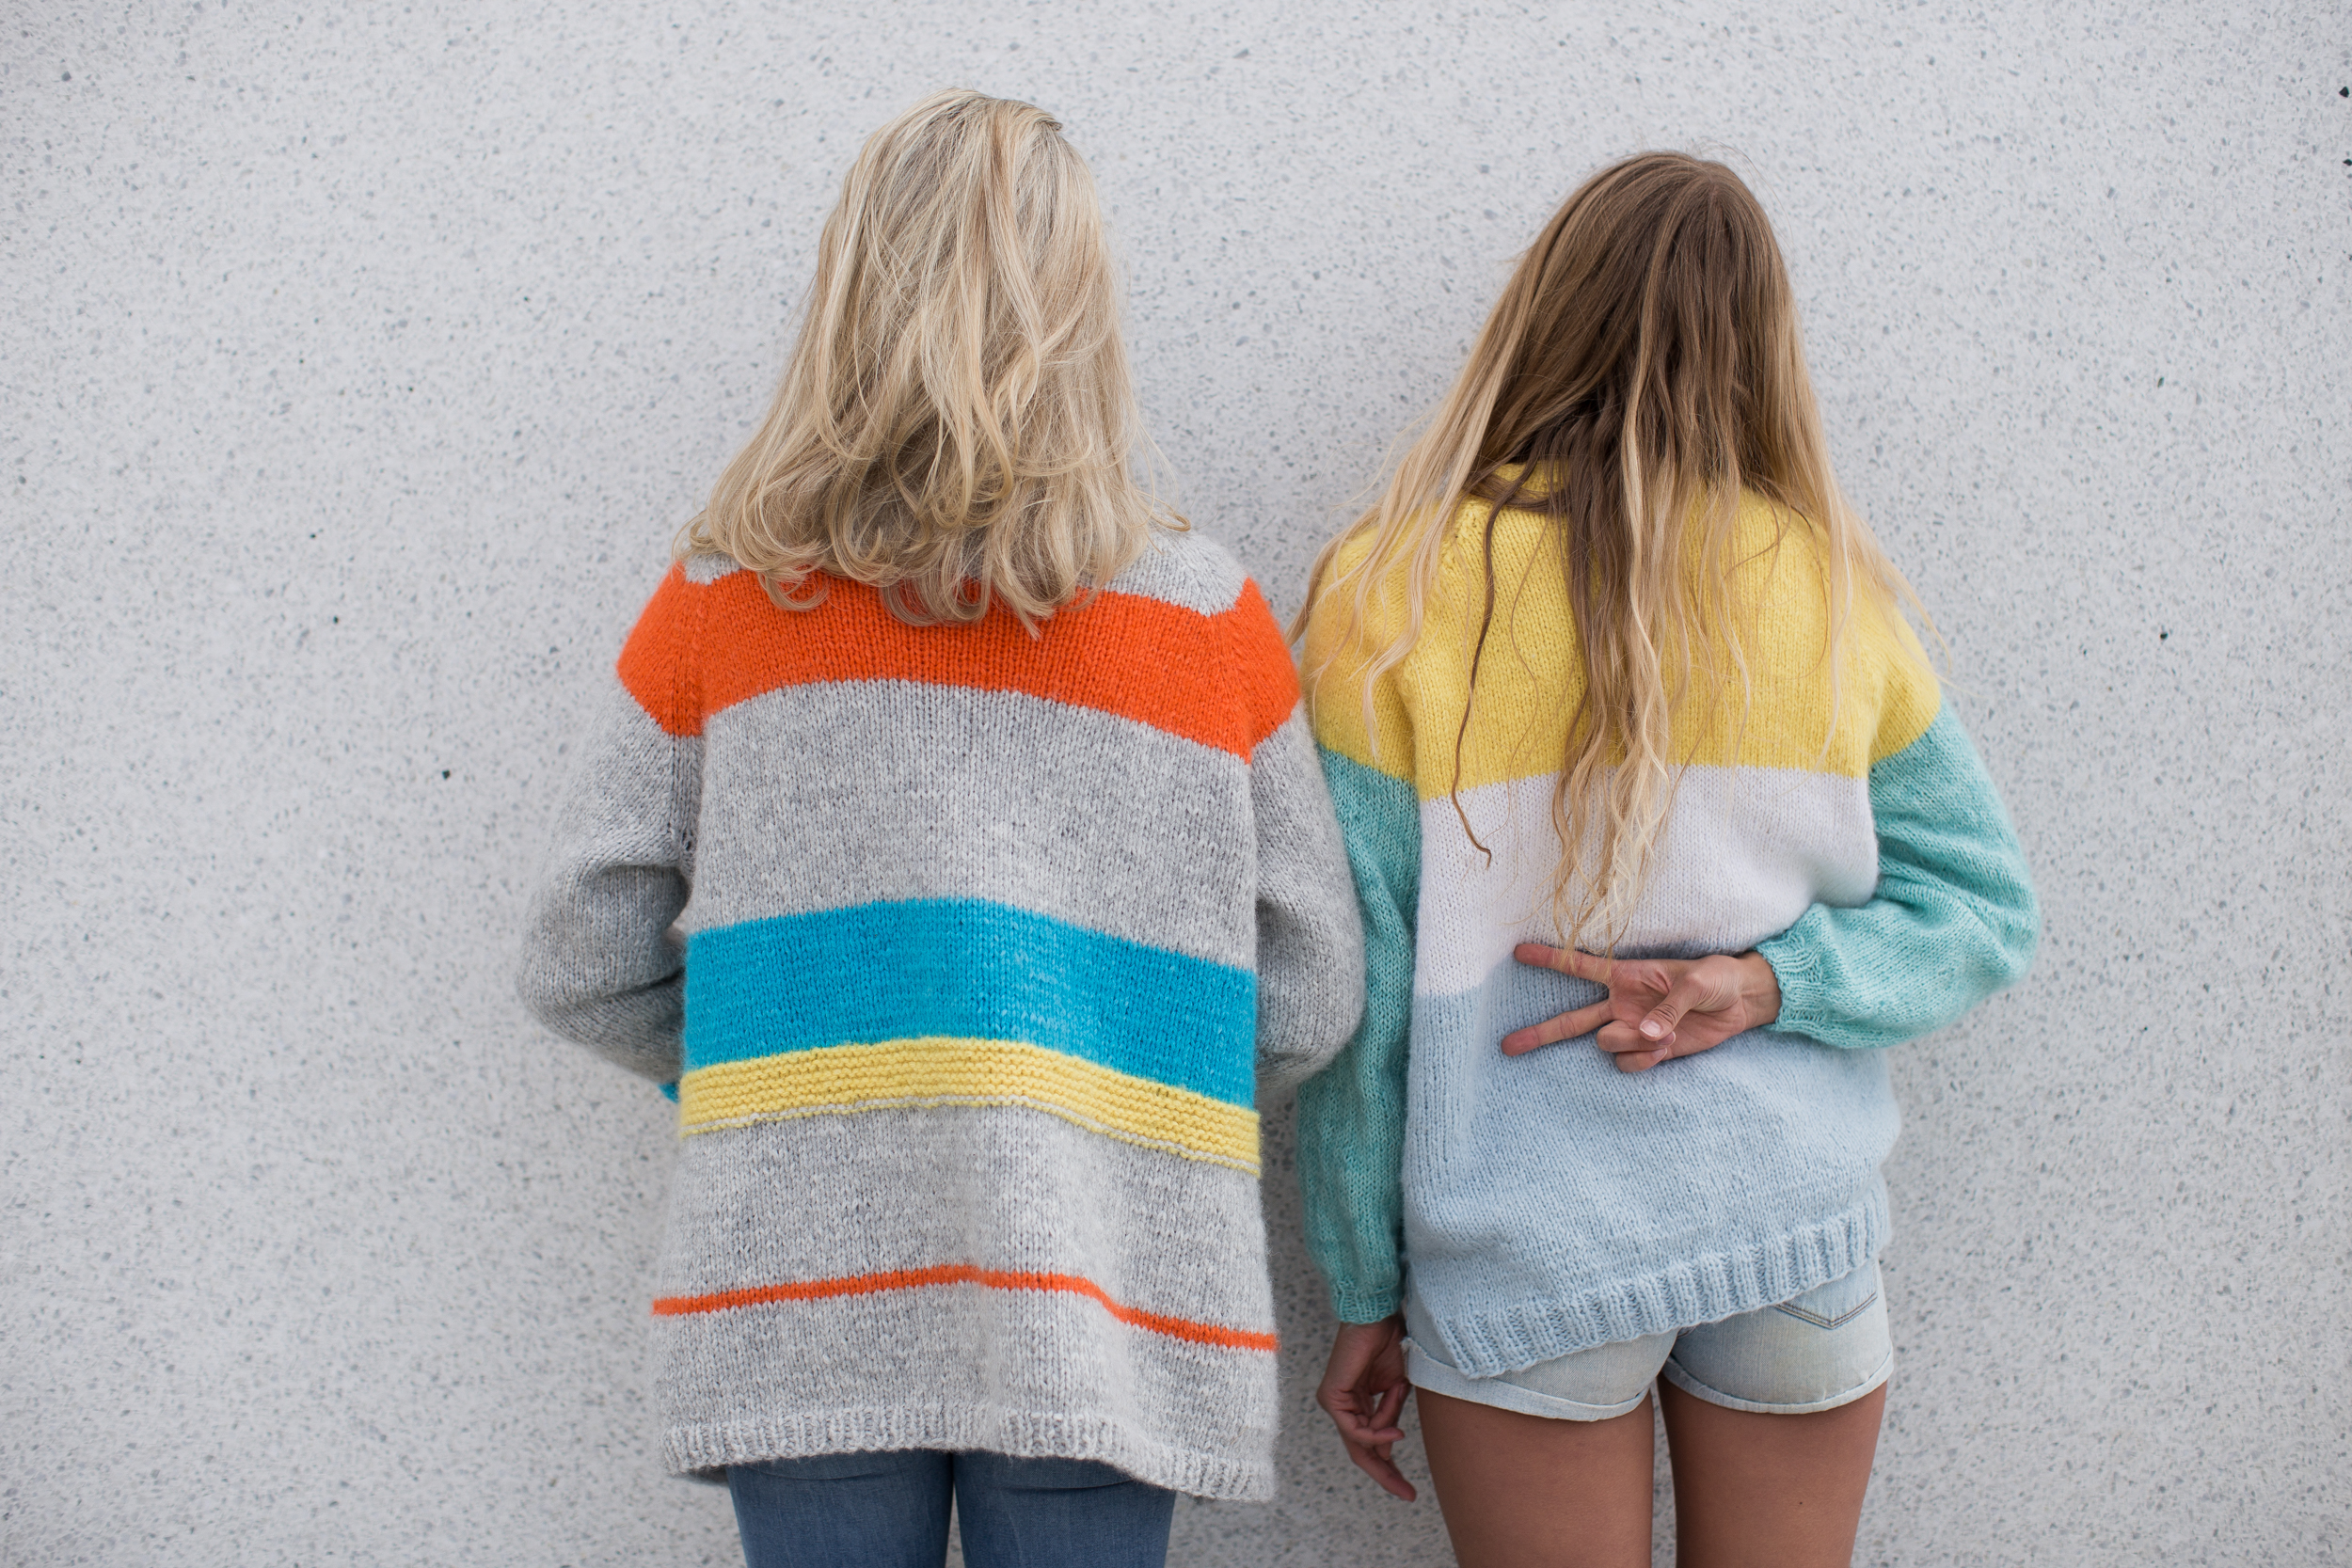 womens knitwear sweater - Jubel jacket | Colorful striped jacket knit pattern by HipKnitShop - 07/11/2019